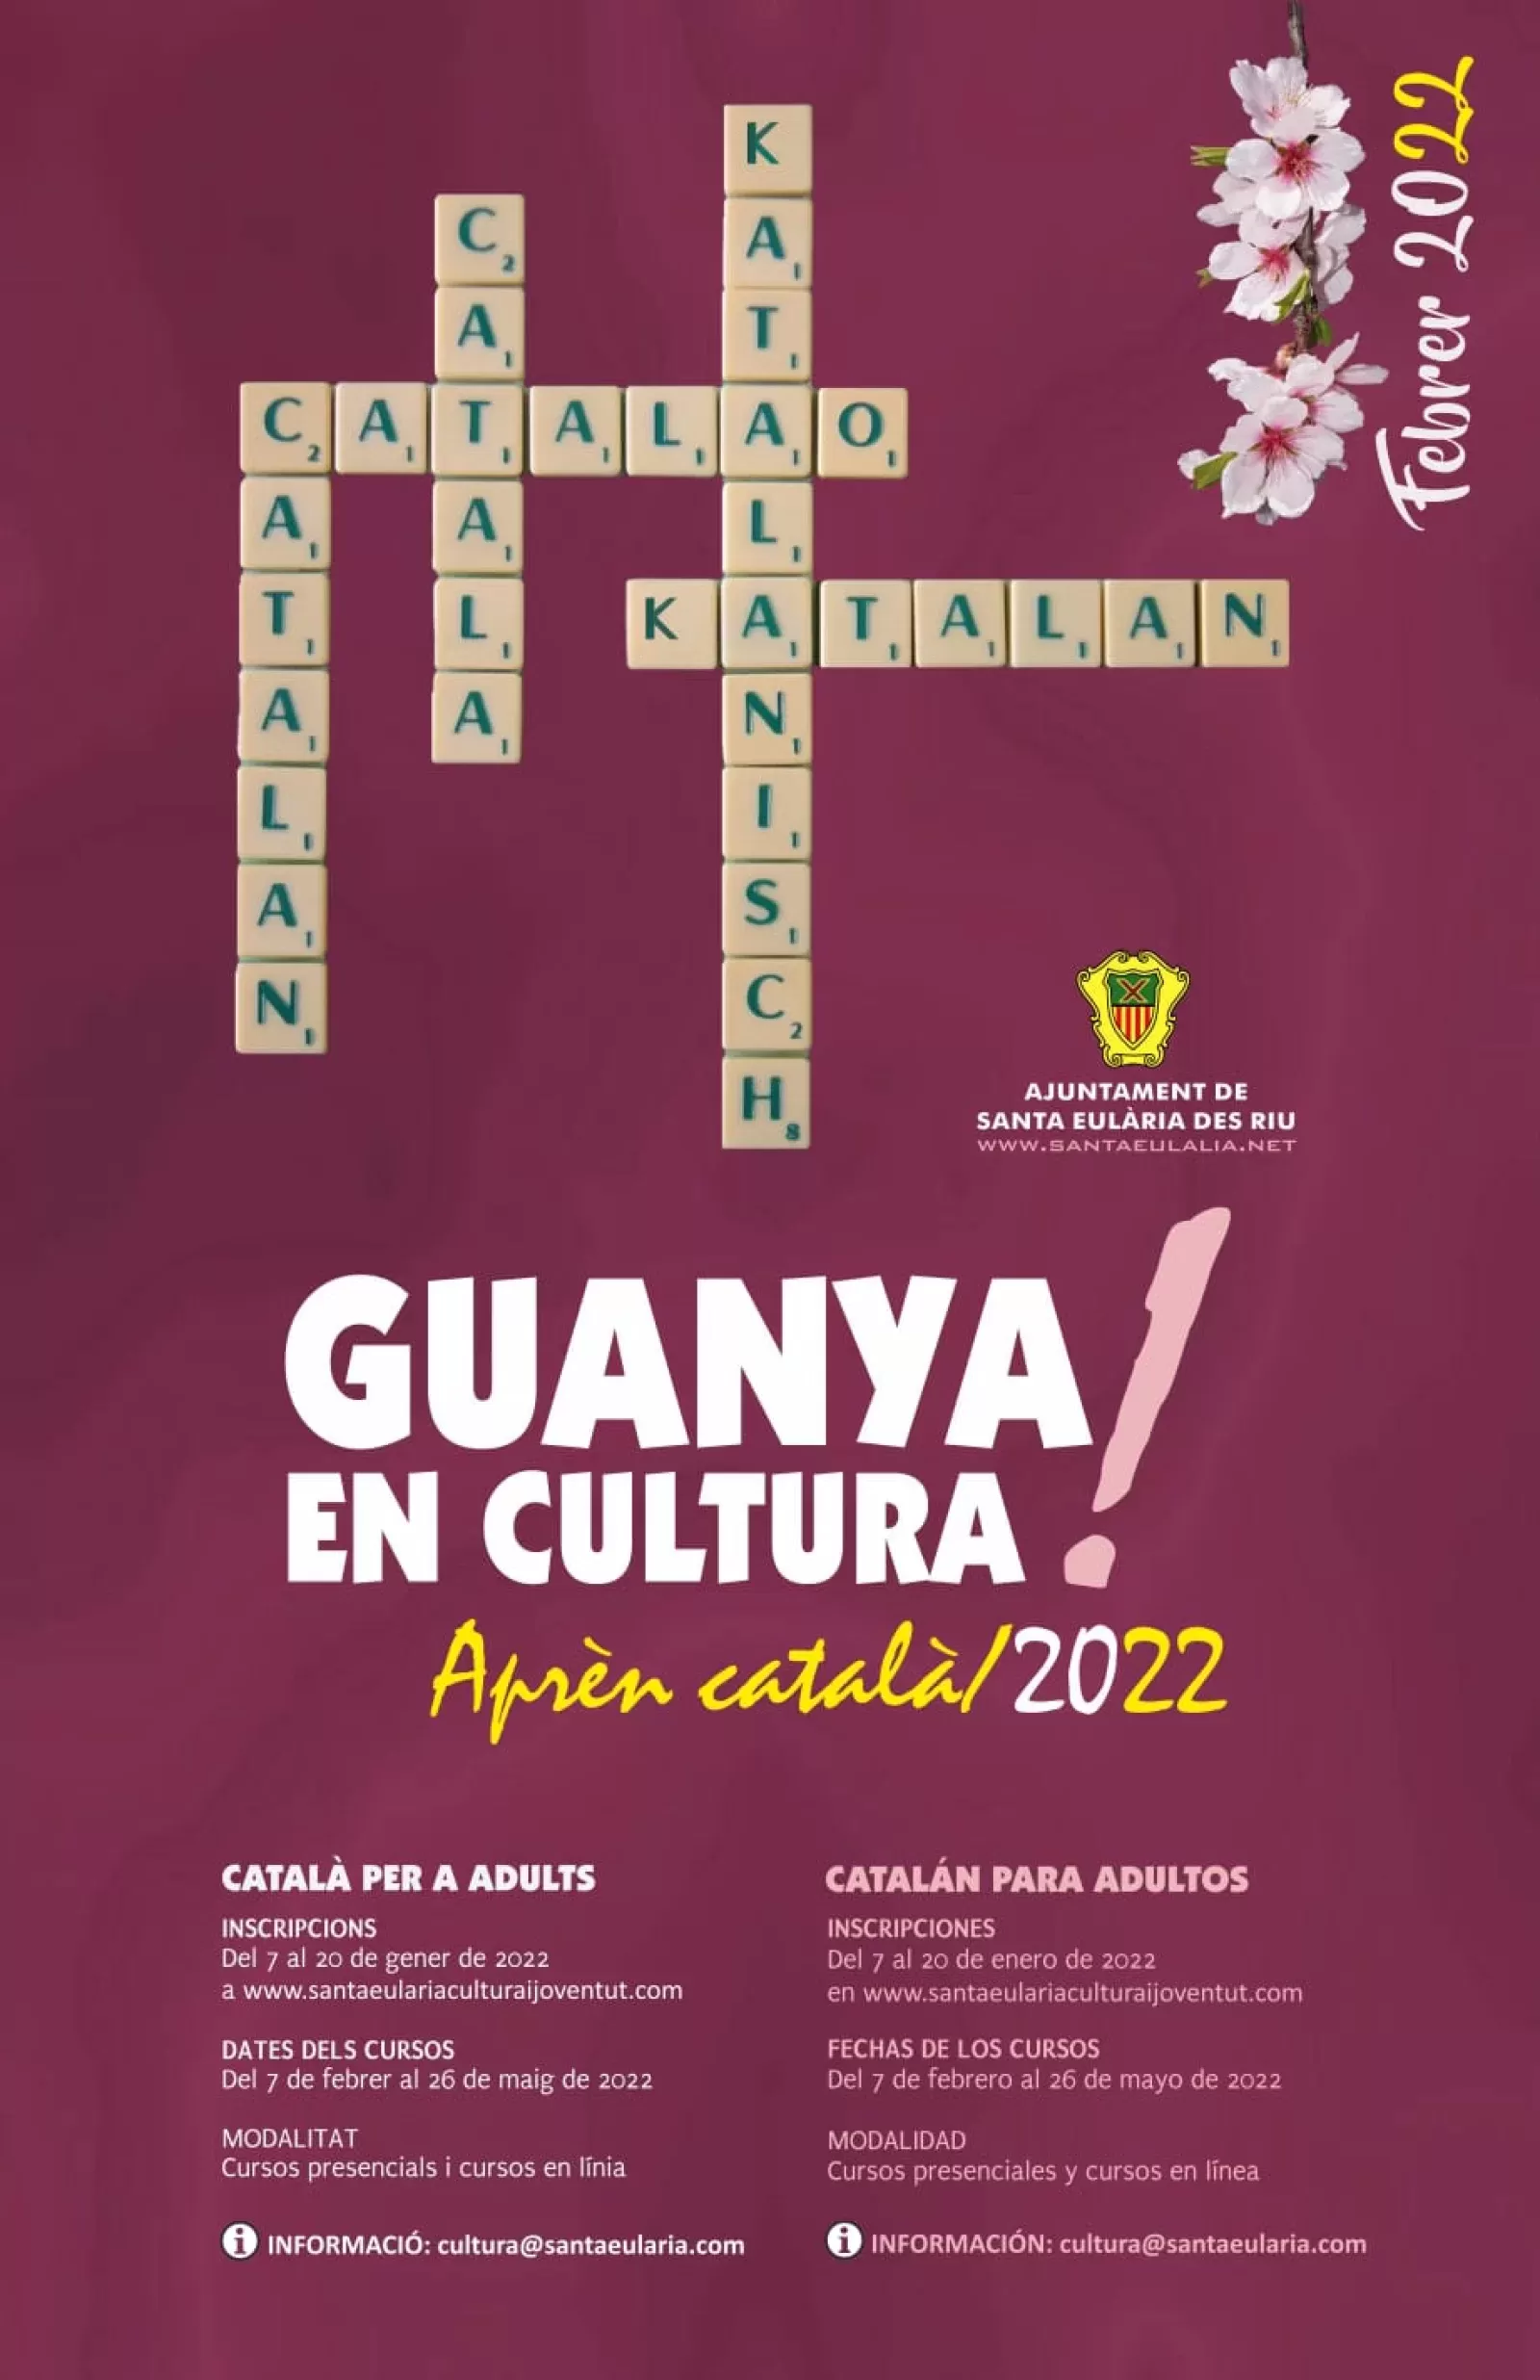 Ampliado hasta el miércoles 26 de enero el plazo para inscribirse en los cursos de catalán para personas adultas